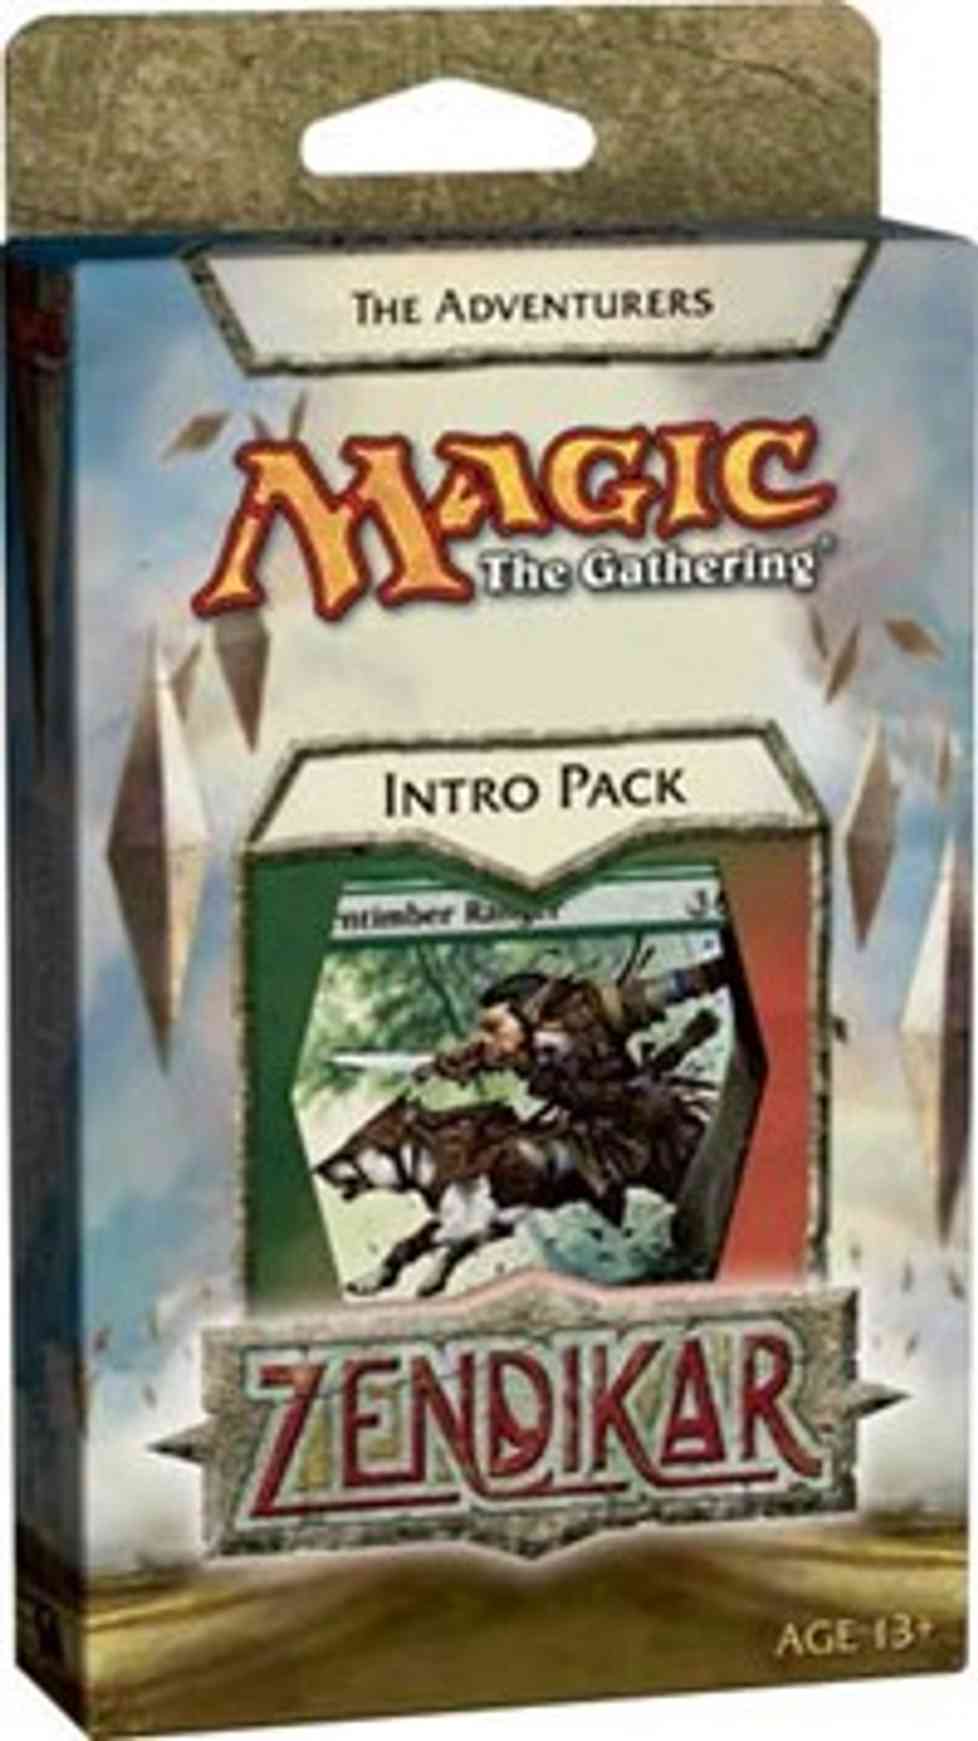 Zendikar - Intro Pack - Green - The Adventurers magic card front